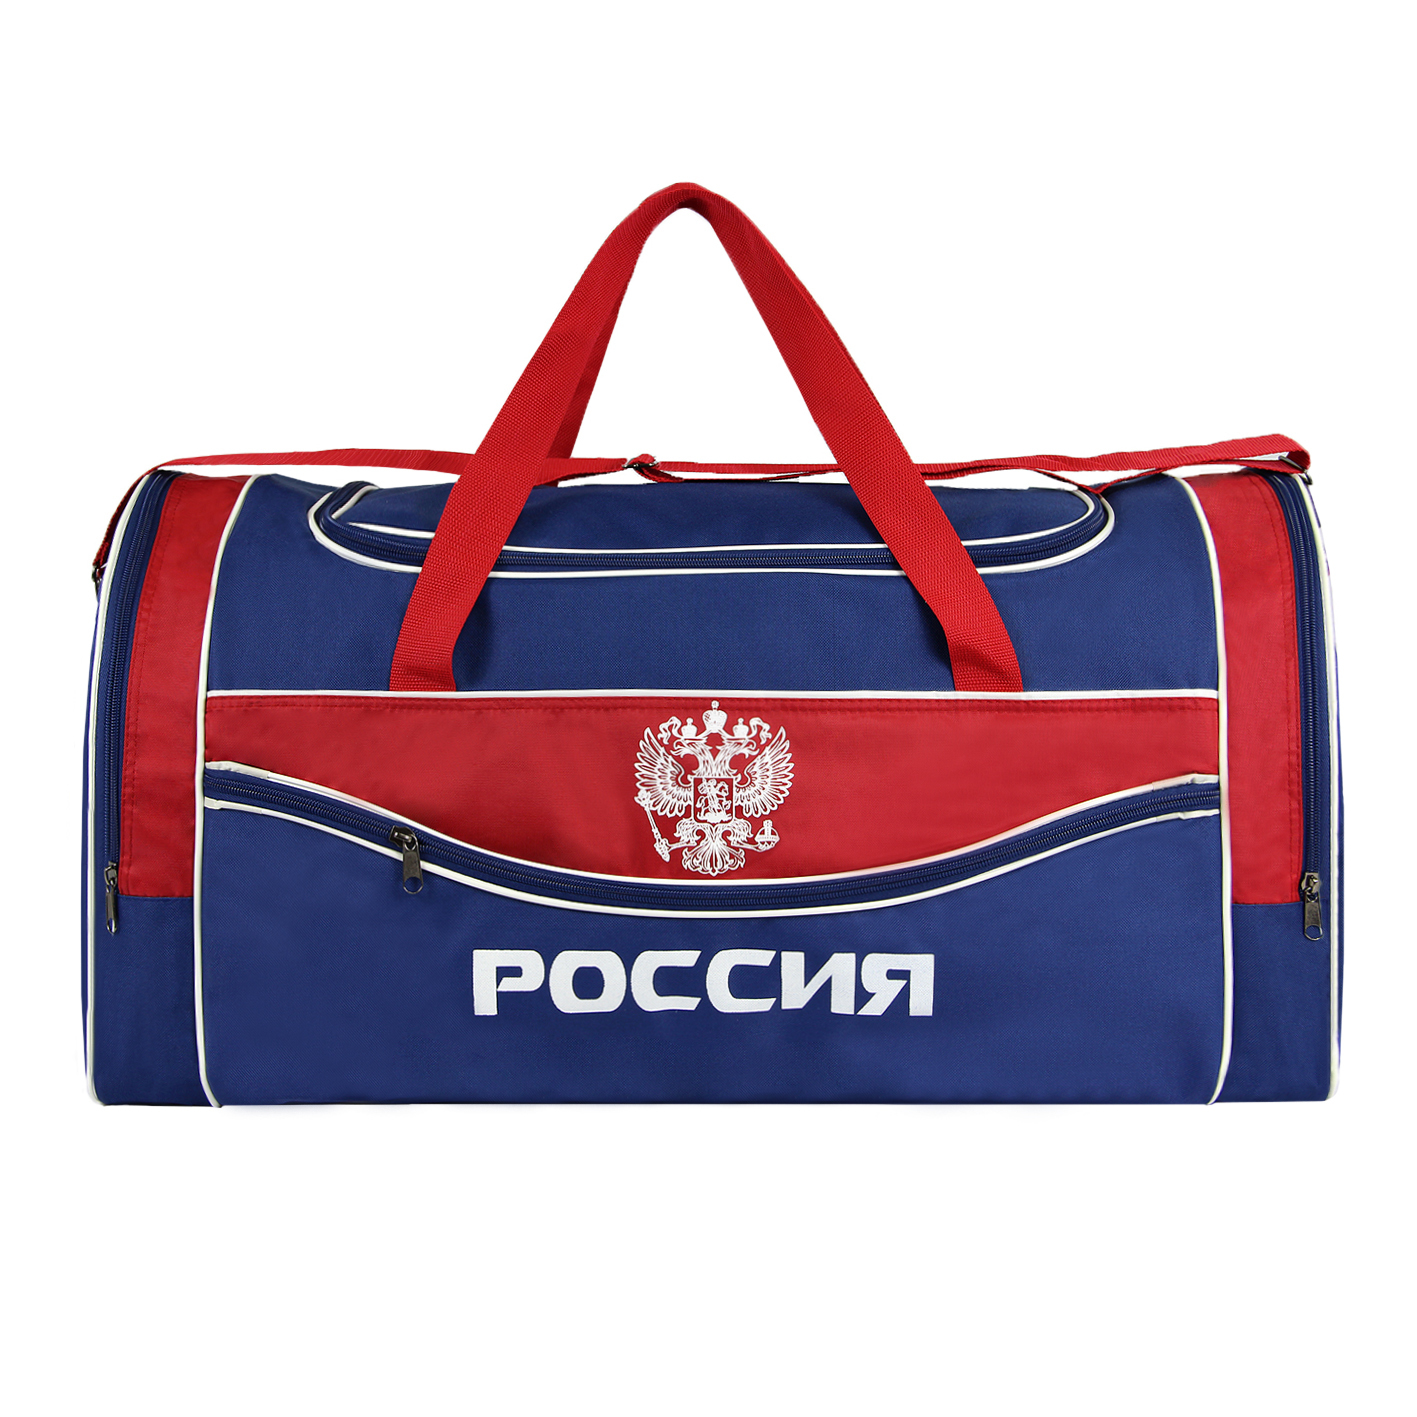 Российские сумки купить